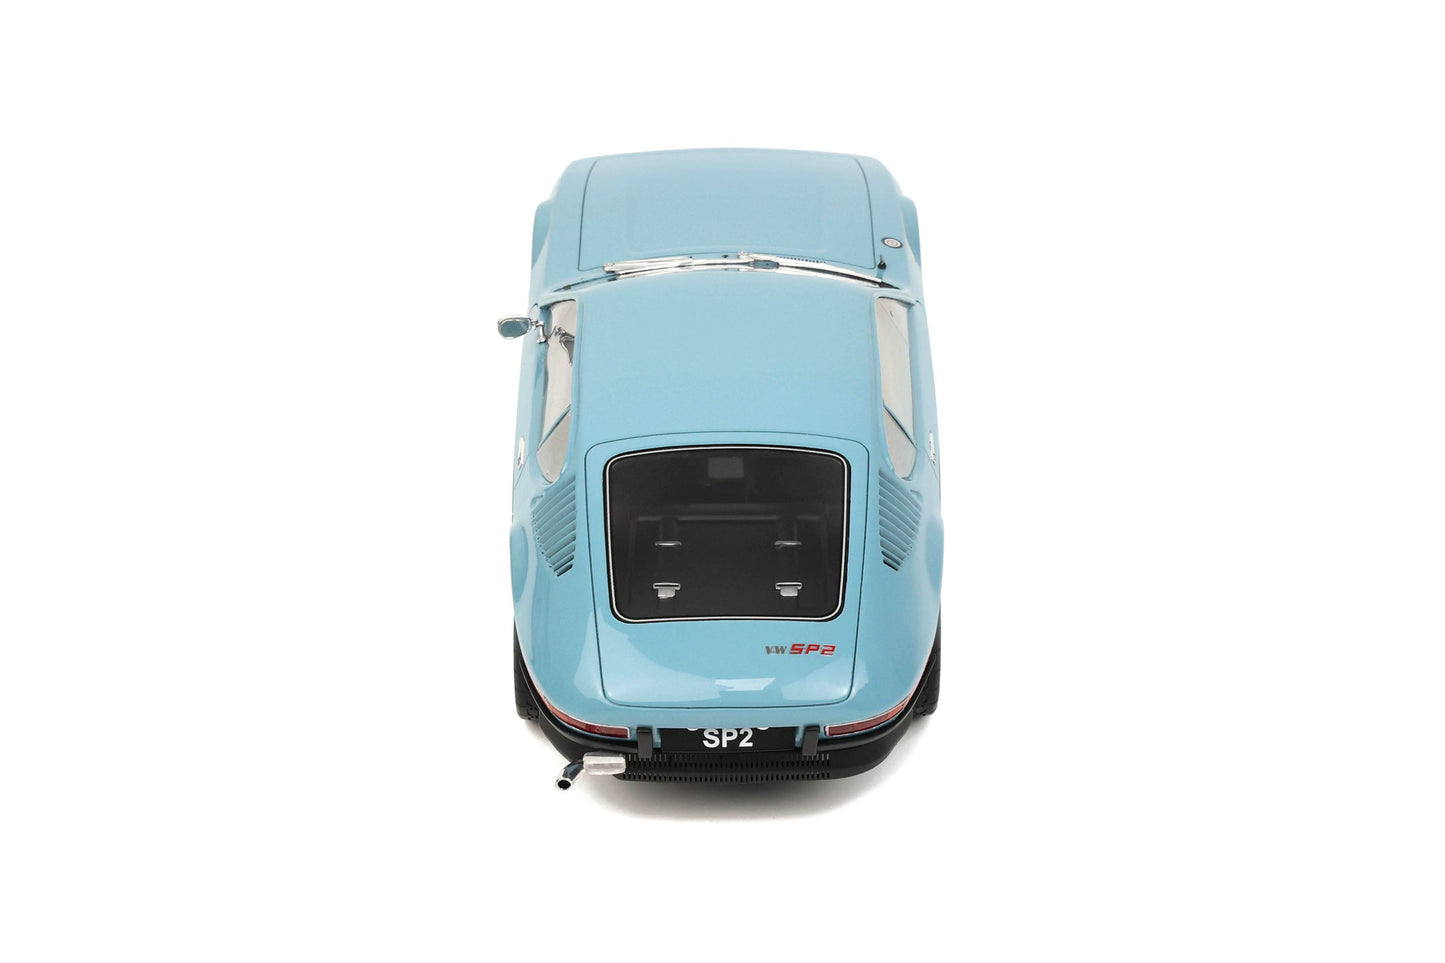 OttOmobile - Volkswagen SP2 (1972) (Niagara Blue) 1:18 Scale Scale Model